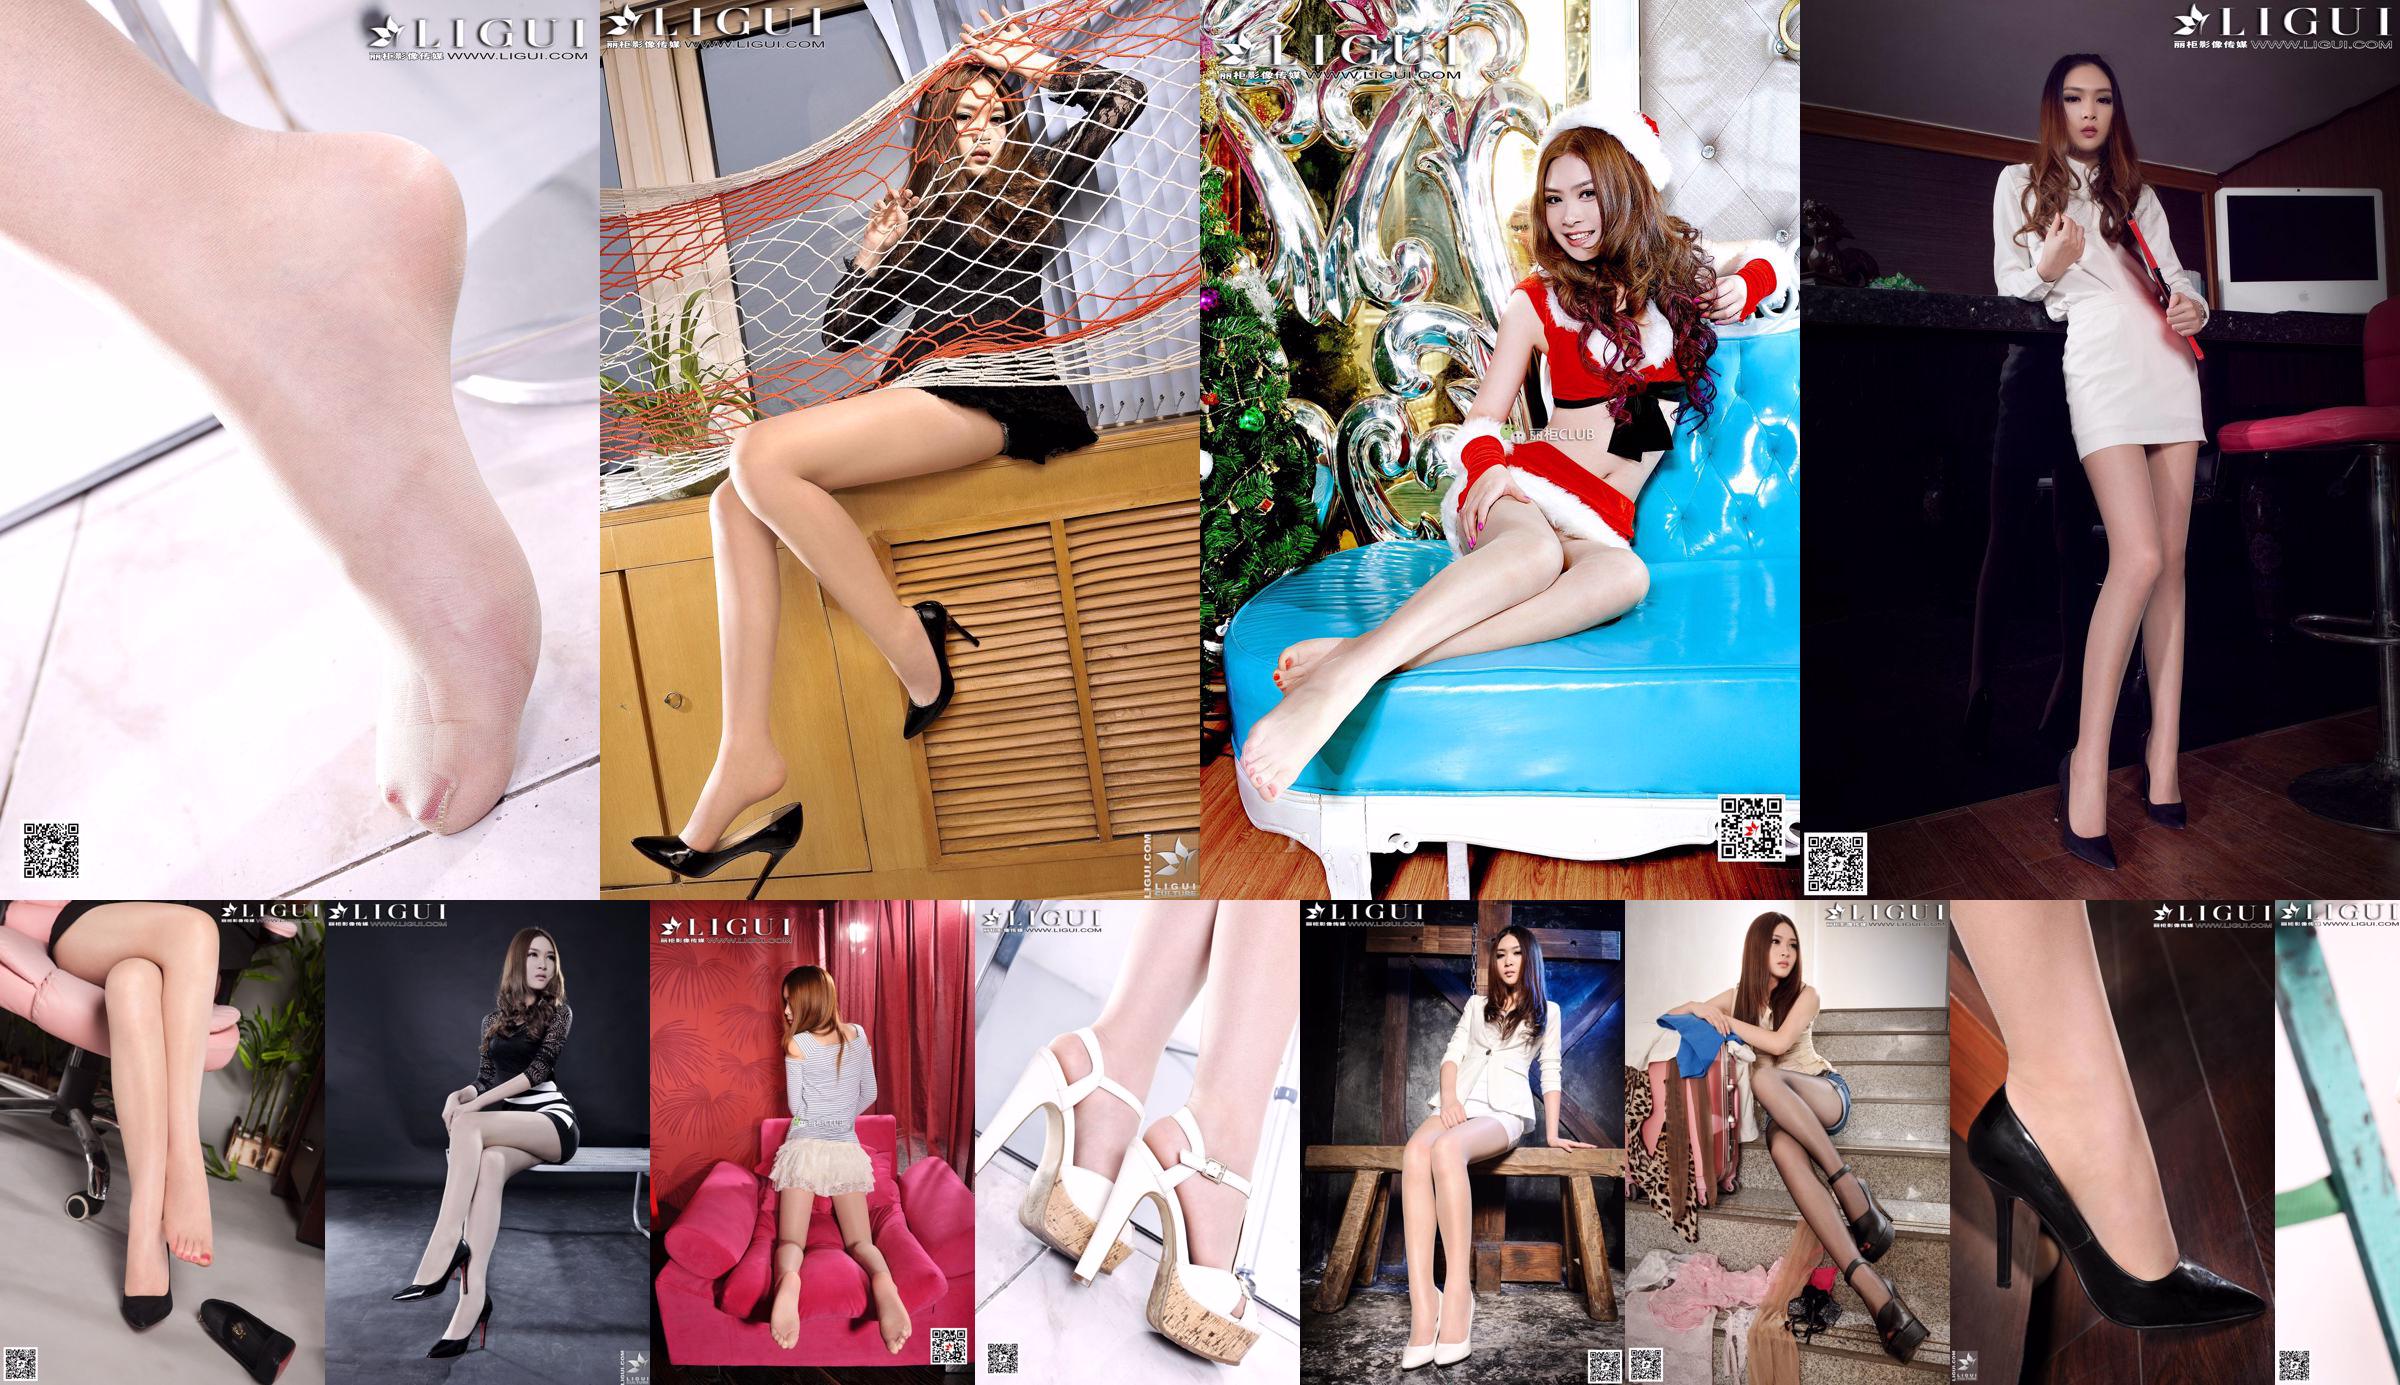 [丽 柜 贵 足 LiGui] Model Yoona "OL Professional Wear Silk Foot High Heels" Koleksi Lengkap Kaki Cantik dan Kaki Giok No.21d148 Halaman 1